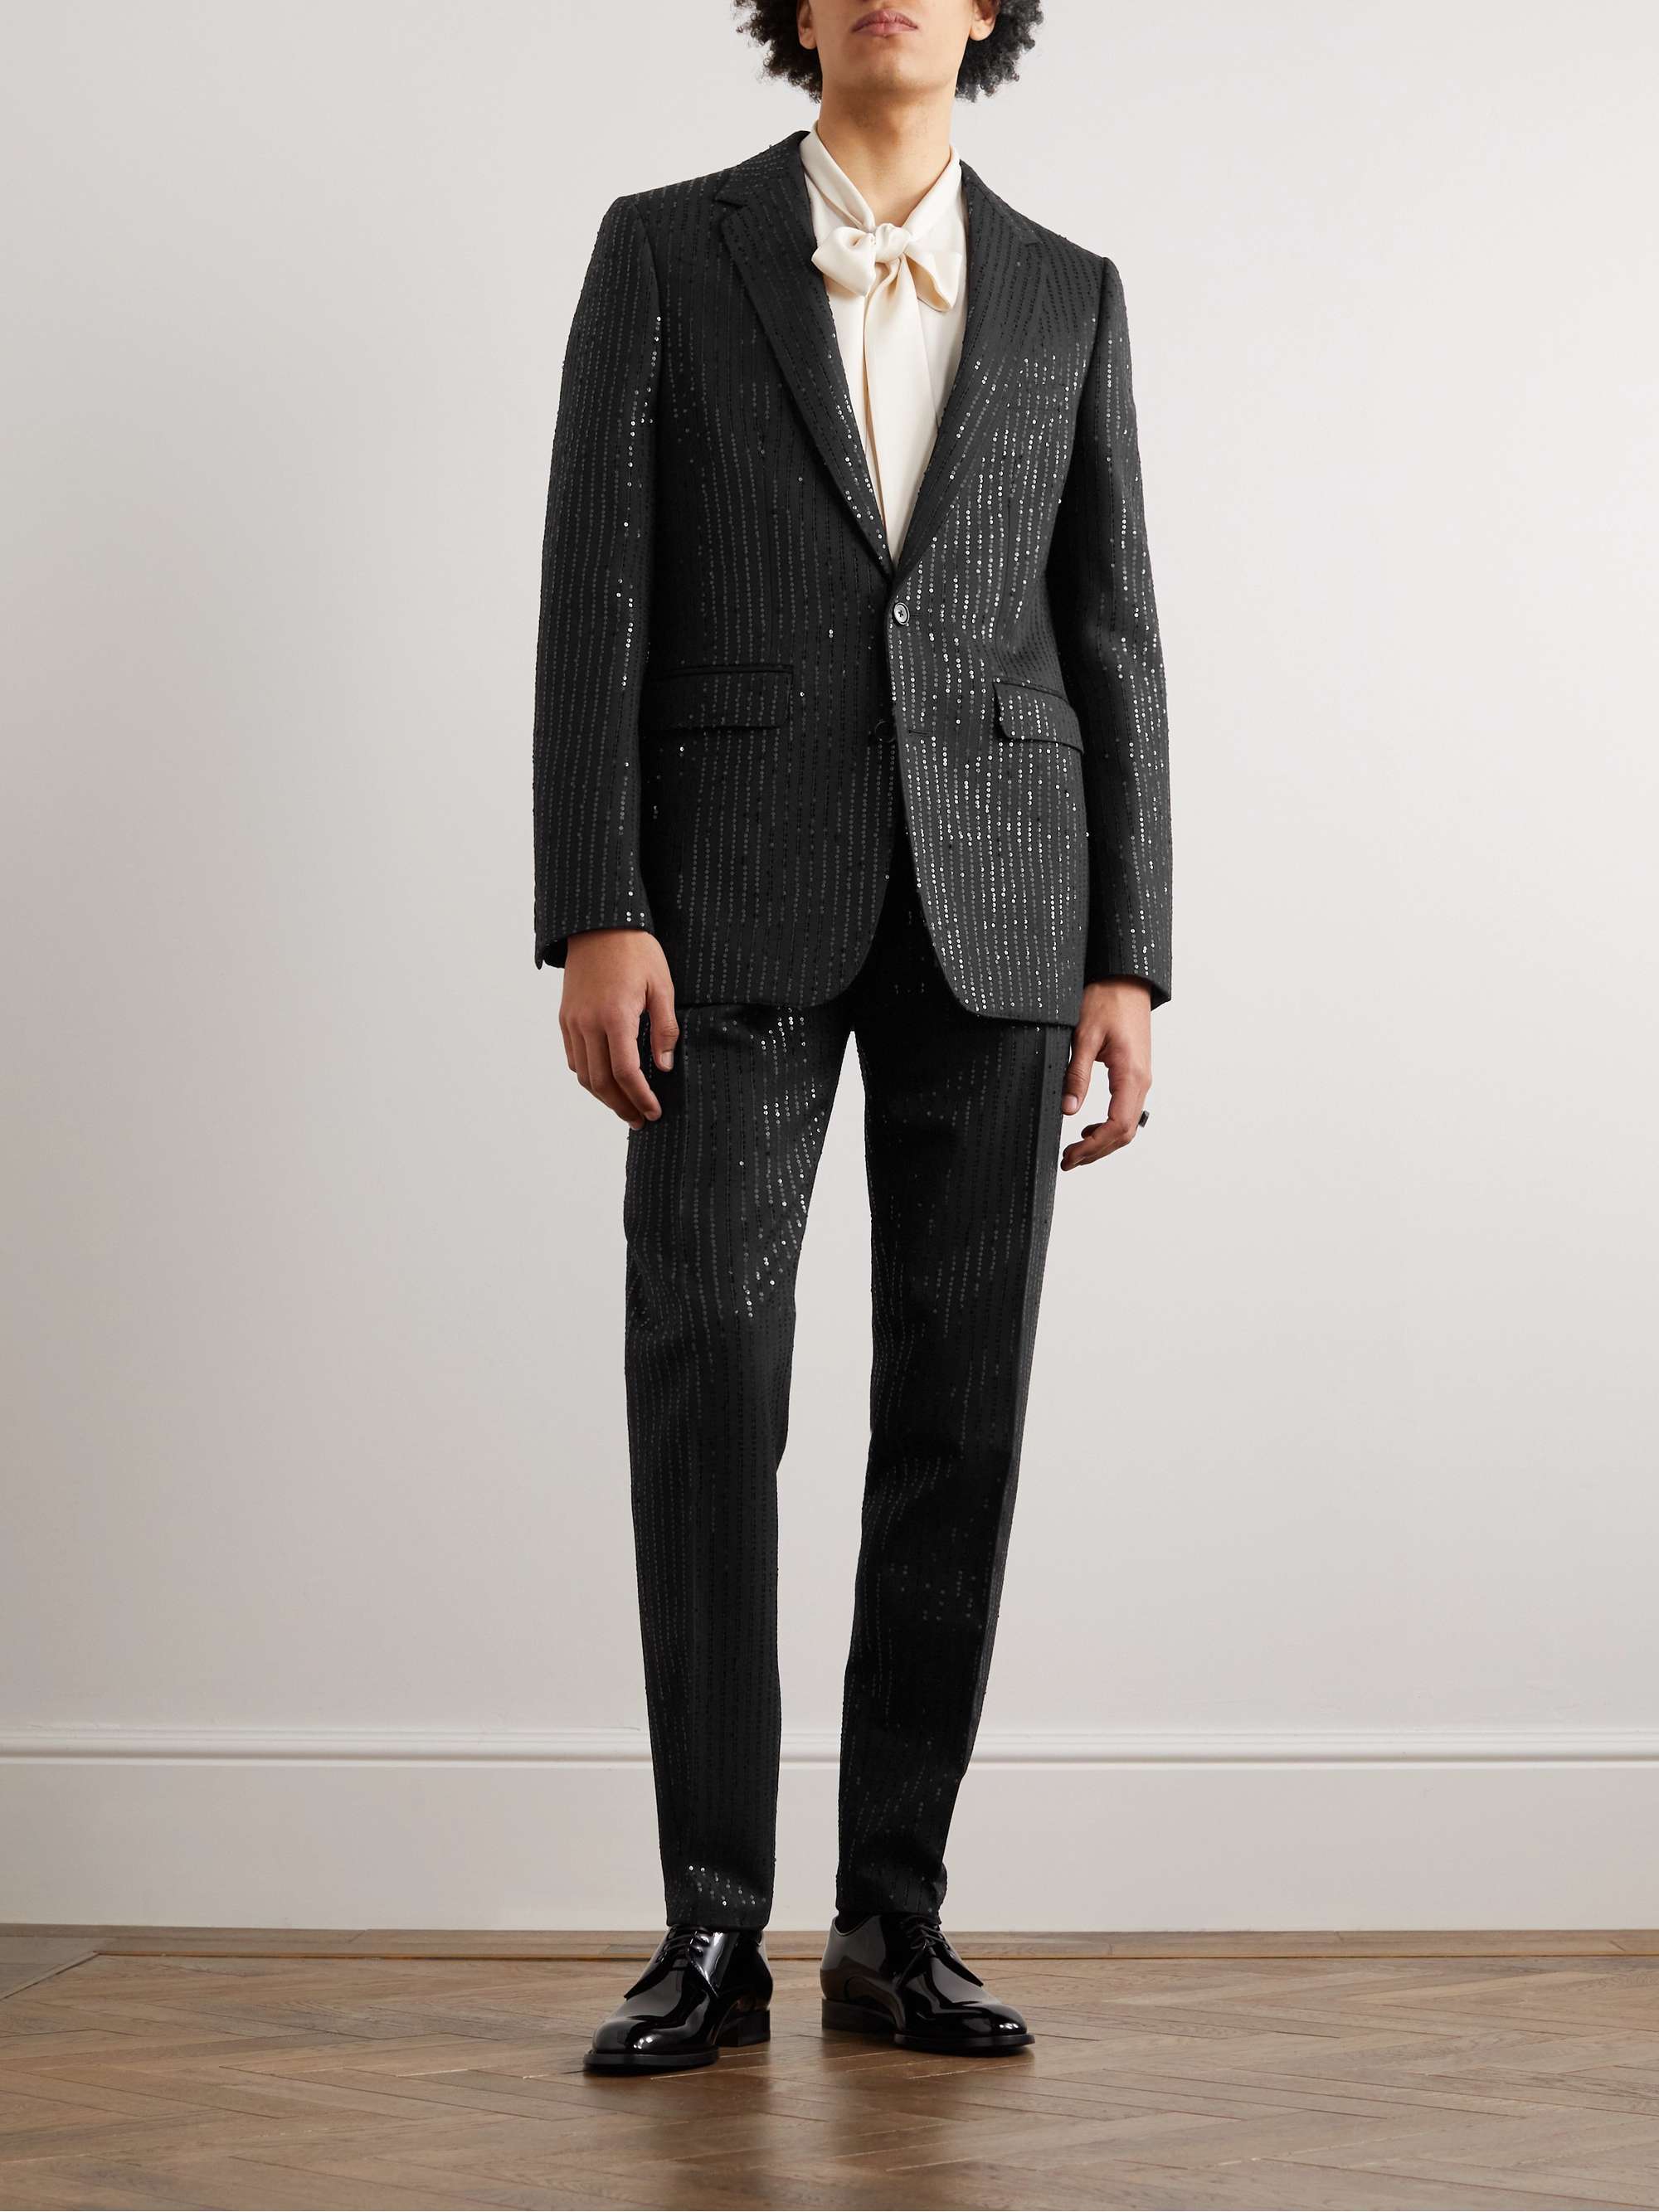 CELINE HOMME Sequin-Embellished Wool Suit Jacket